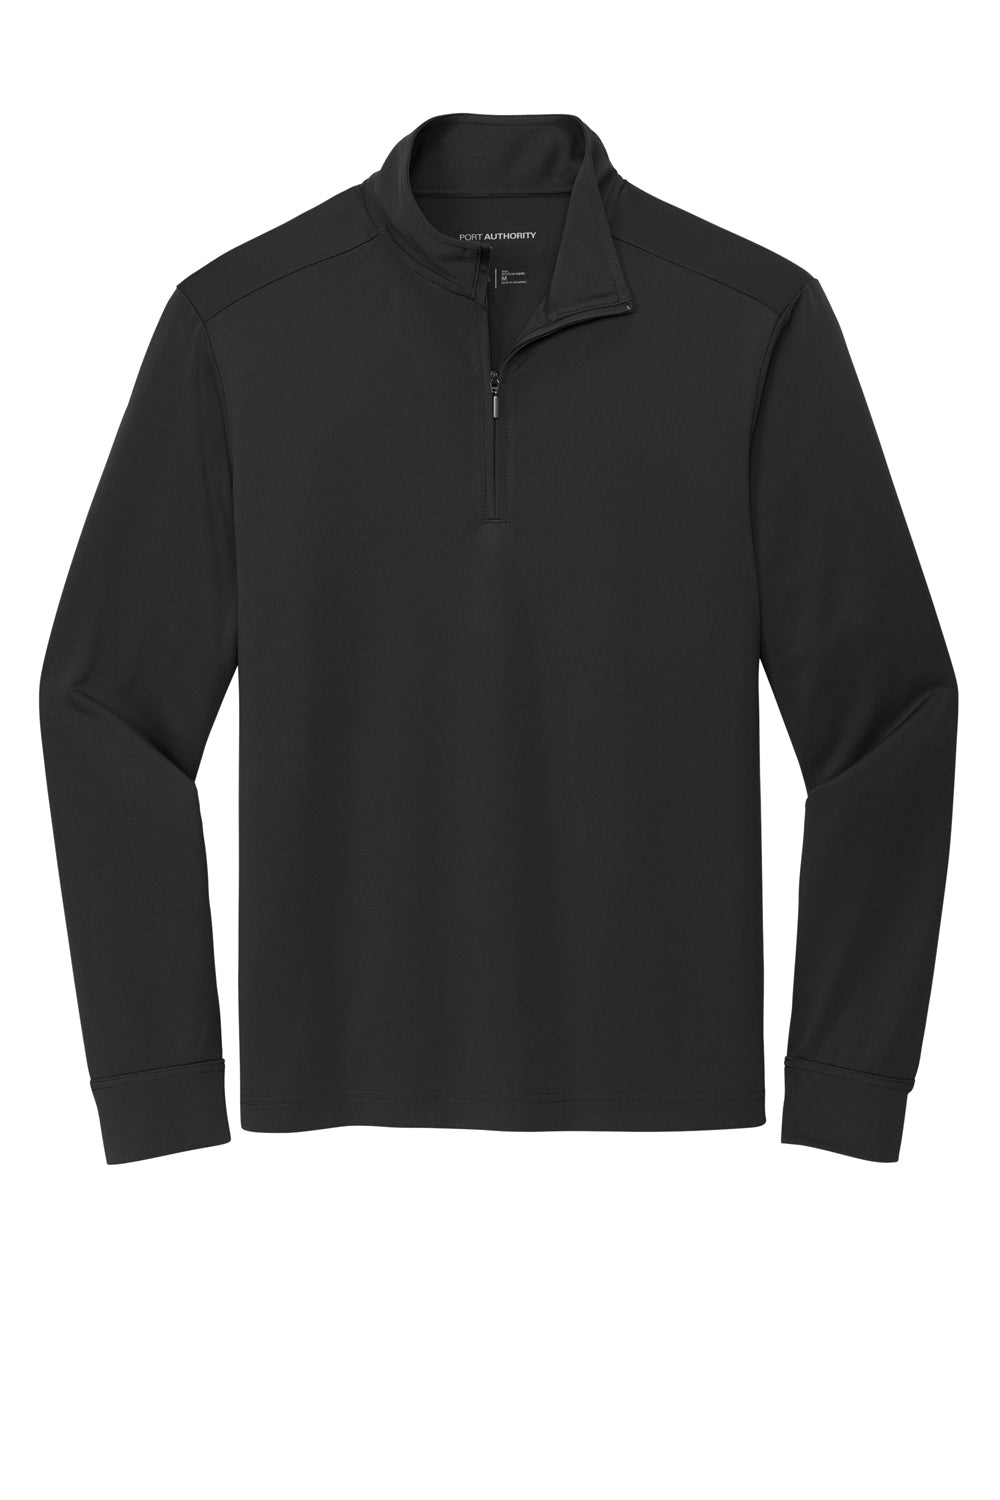 Port Authority K865 C-Free 1/4 Zip Sweatshirt Deep Black Flat Front